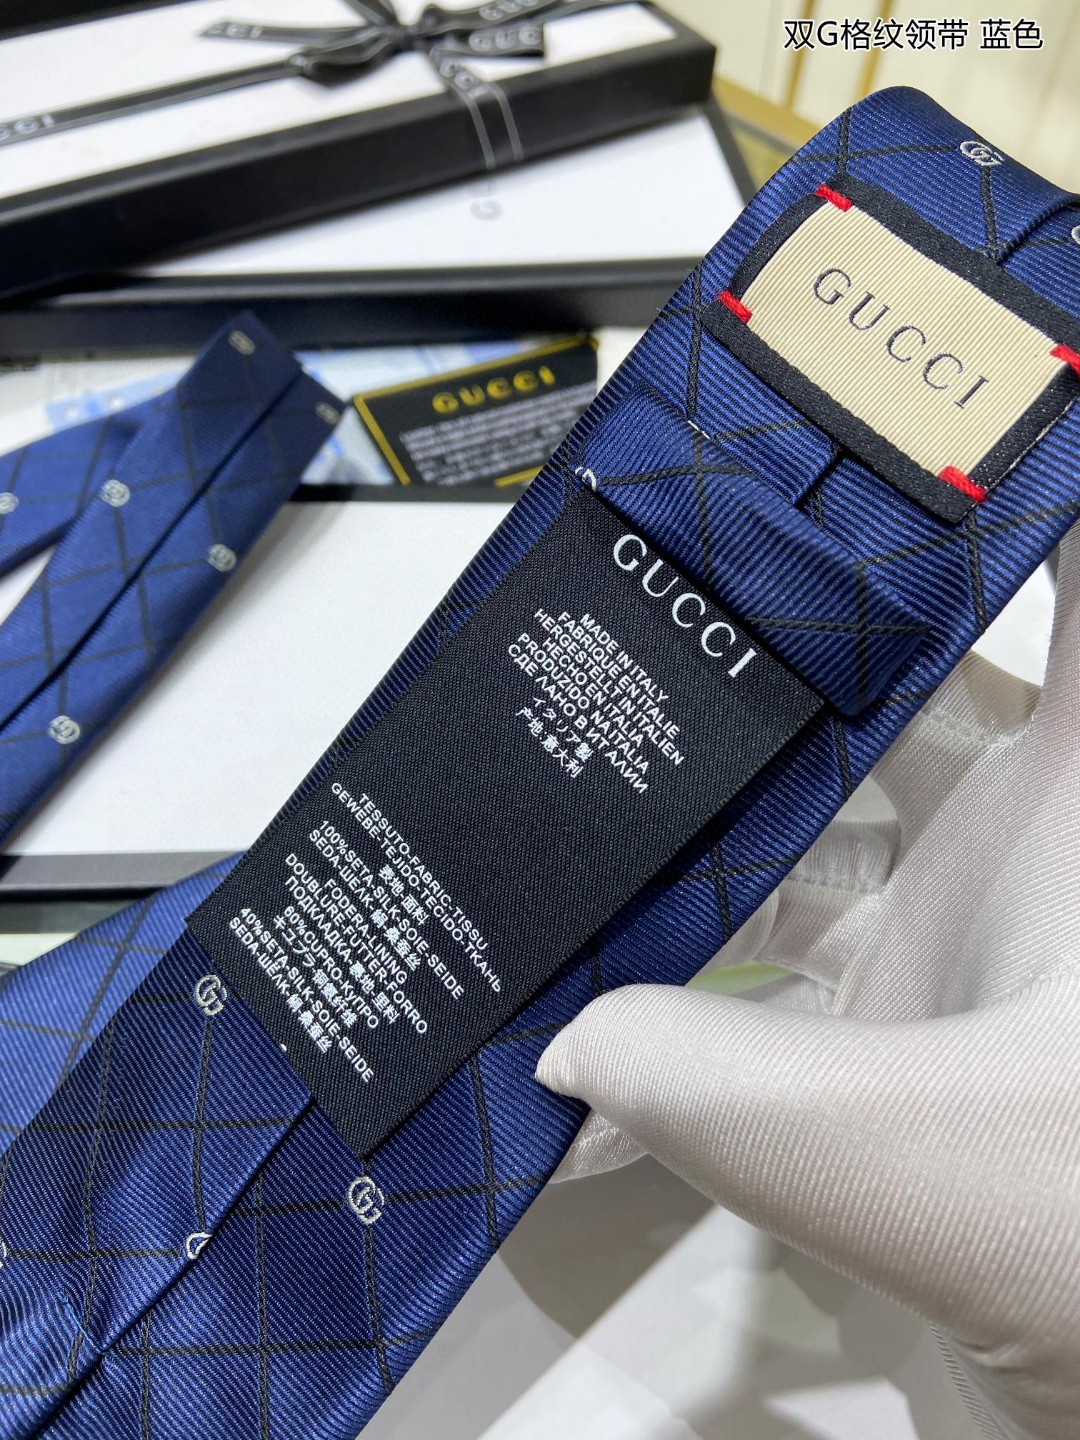 上新G家专柜新款男士领带双G格纹领带稀有采用经典小G搭配交叉线条格纹展现精湛手工与时尚优雅的理想选择这款